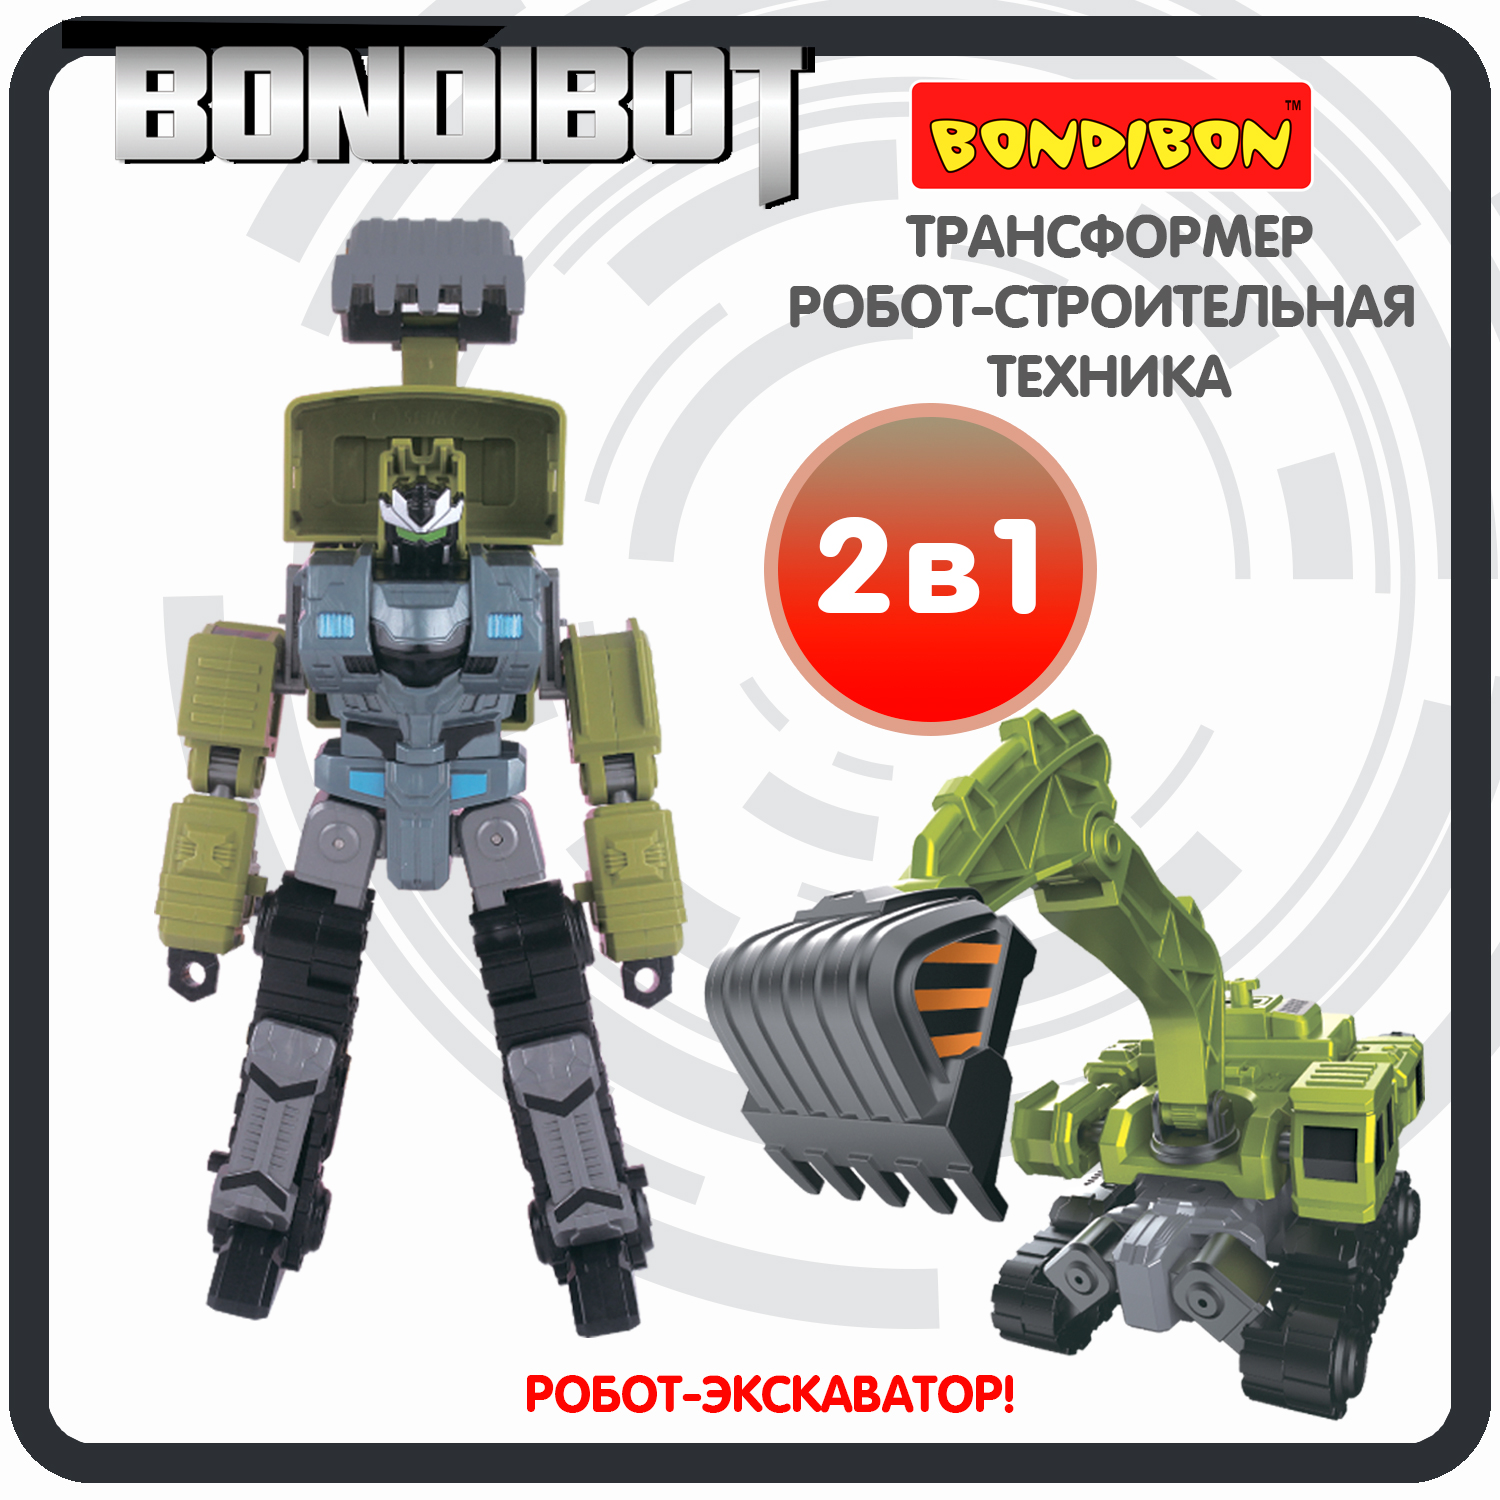 Трансформер робот-строительная техника, 2в1 BONDIBOT Bondibon, экскаватор / ВВ6054 трансформер конструктор с отверткой 2в1 bondibot bondibon экскаватор c ковшом робот